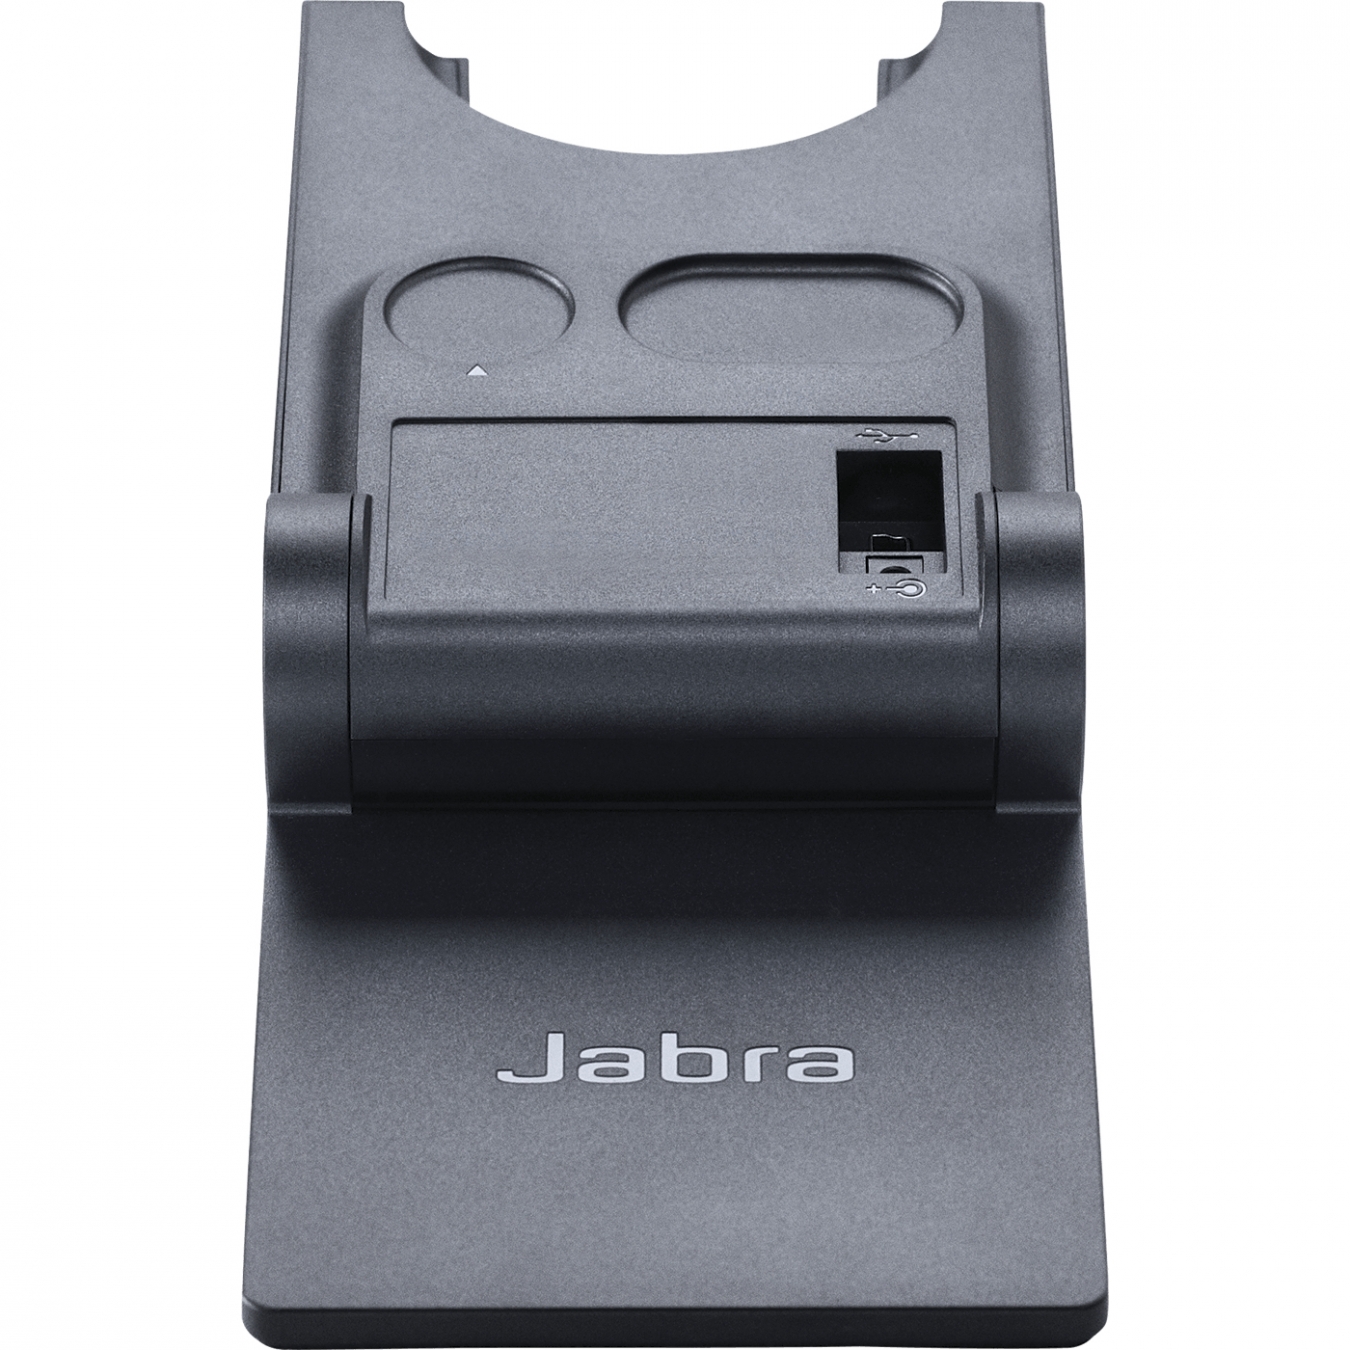 Jabra Headset PRO 930 USB monaural UC schnurlos